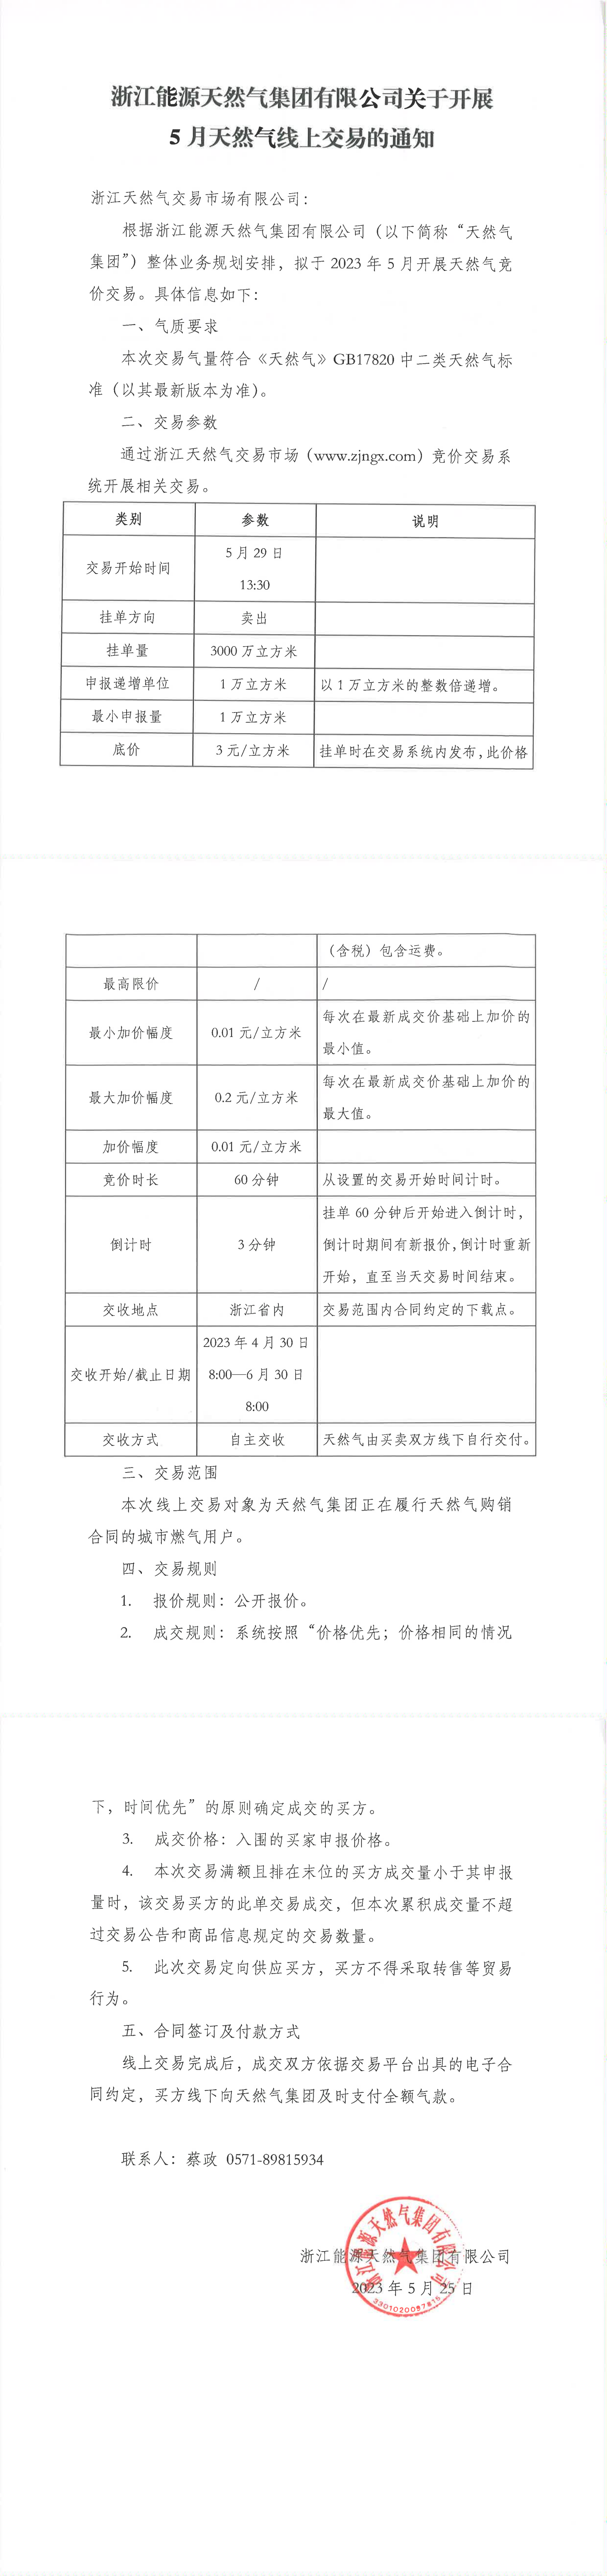 浙江能源天然气集团有限公司关于开展5月天然气线上交易的通知_00.png